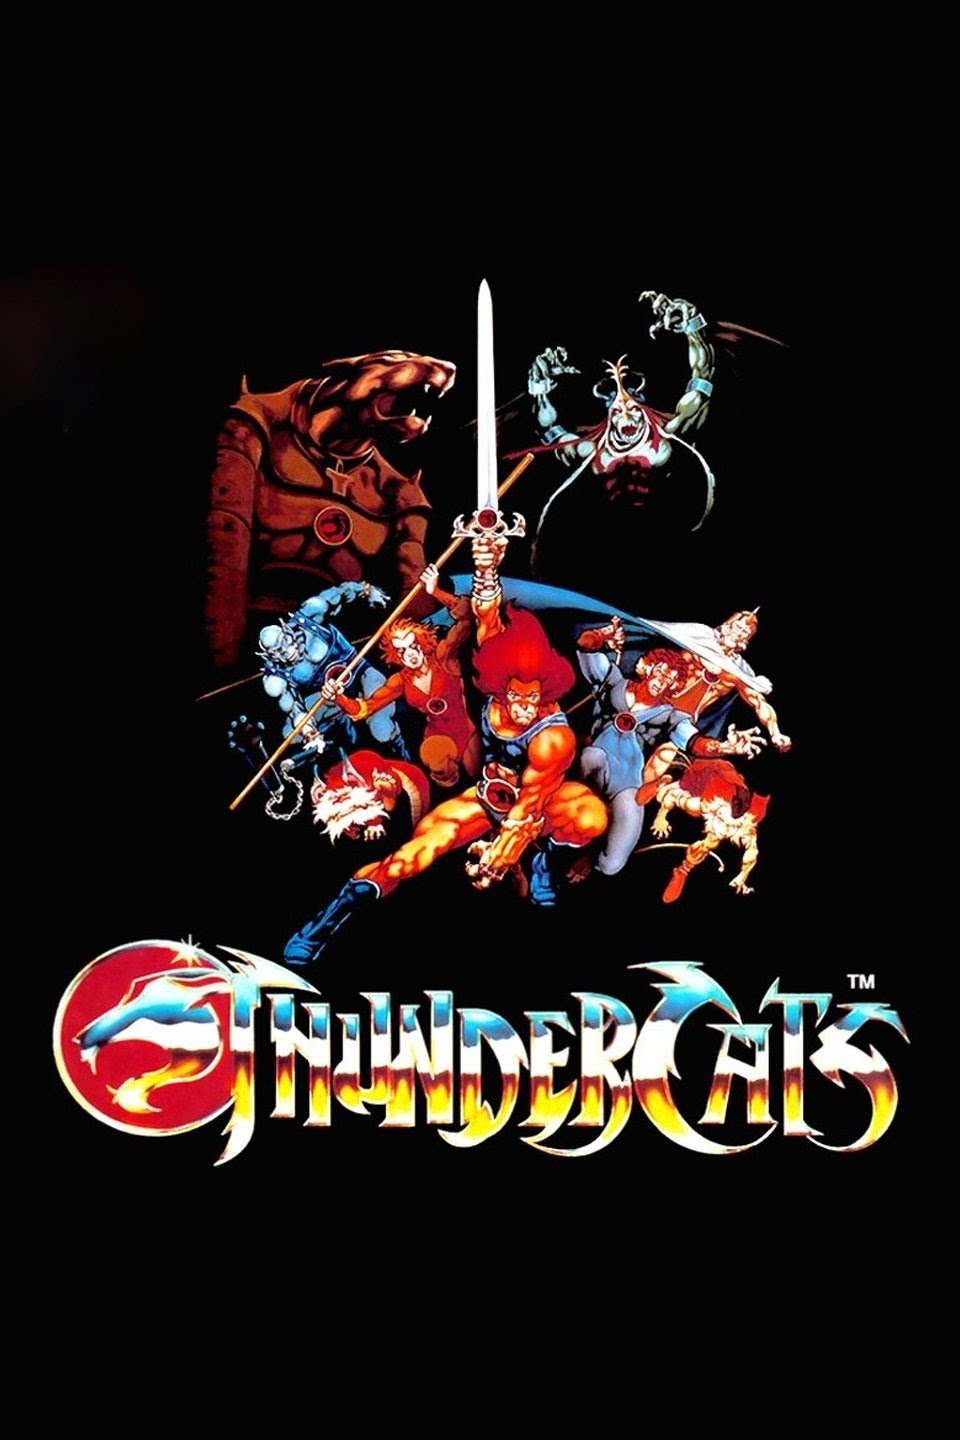 Thundercats: Animação entrará para o catálogo da HBO Max